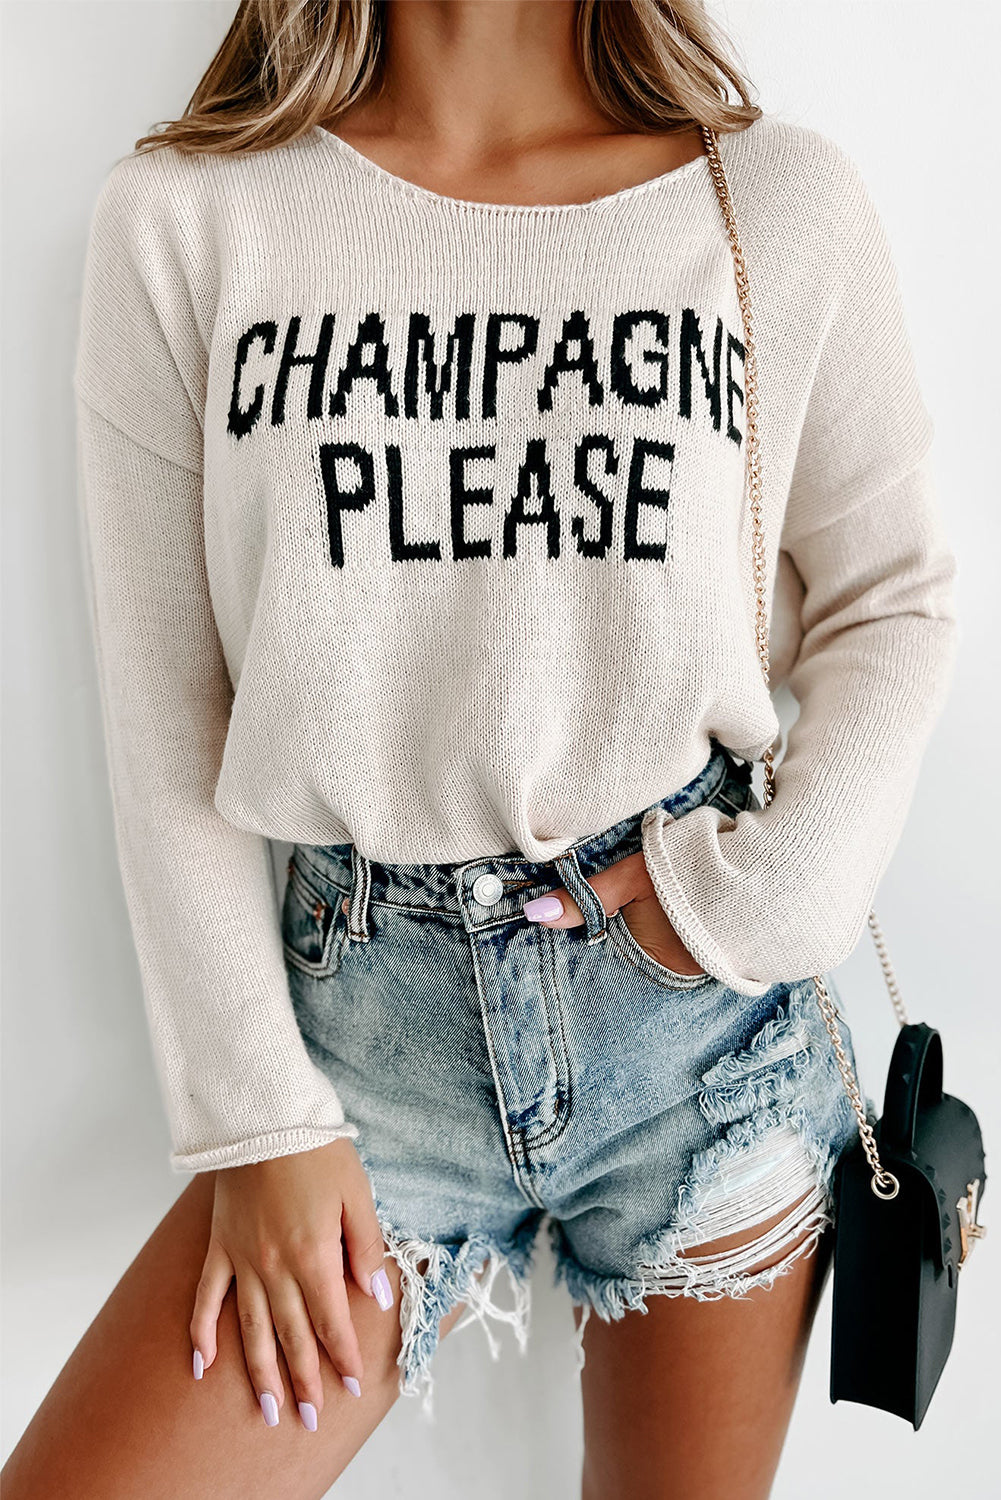 Desert Palm Champagne Per favore maglione grafico